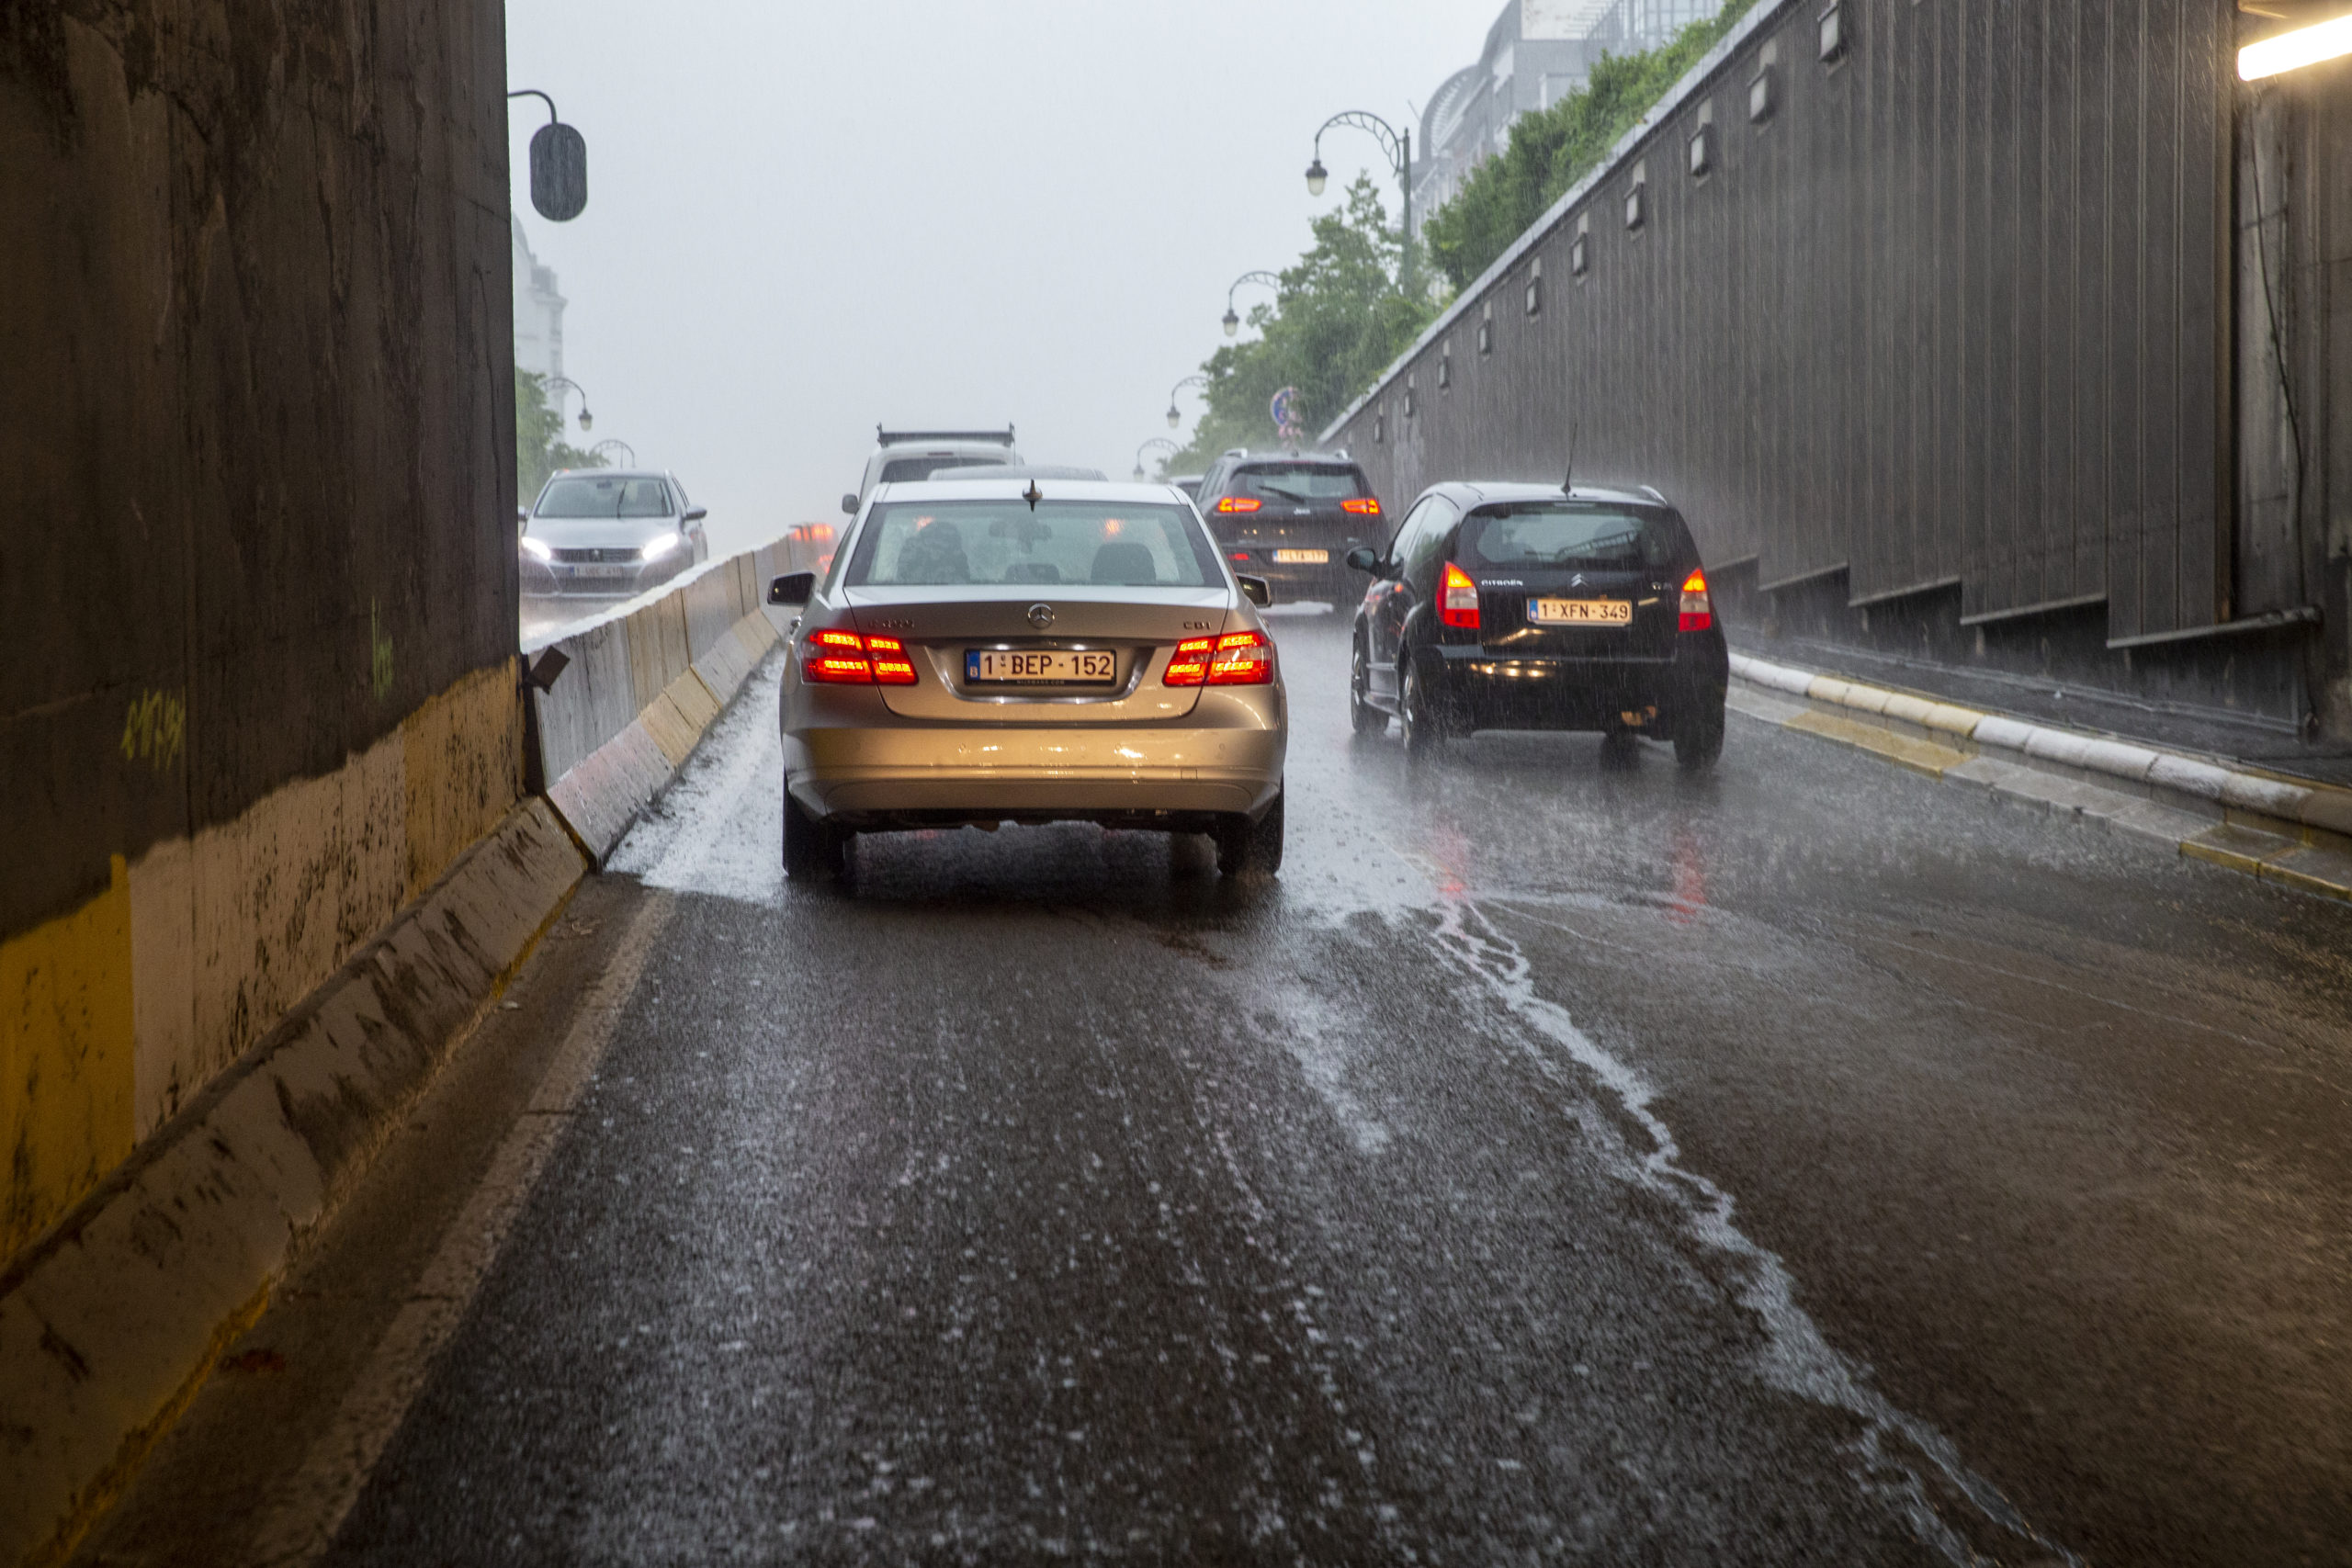 Remote-sensing: ‘5% of diesel cars in Brussels emit 90% of particles’